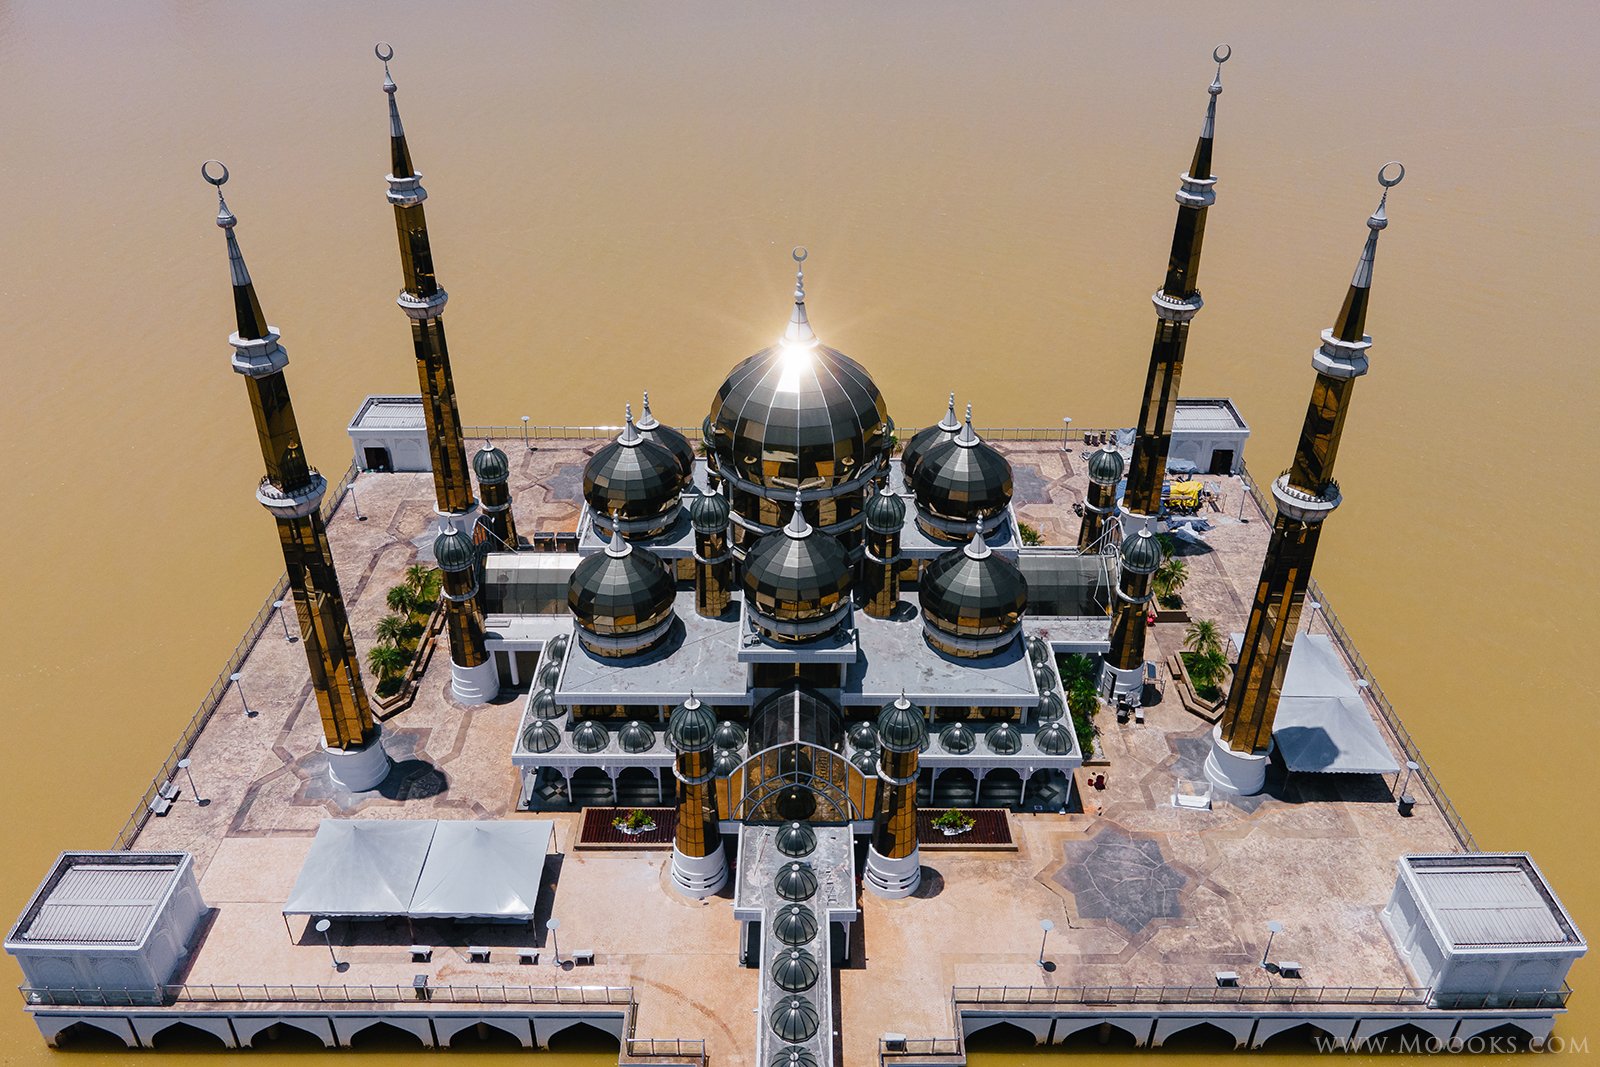 水晶清真寺